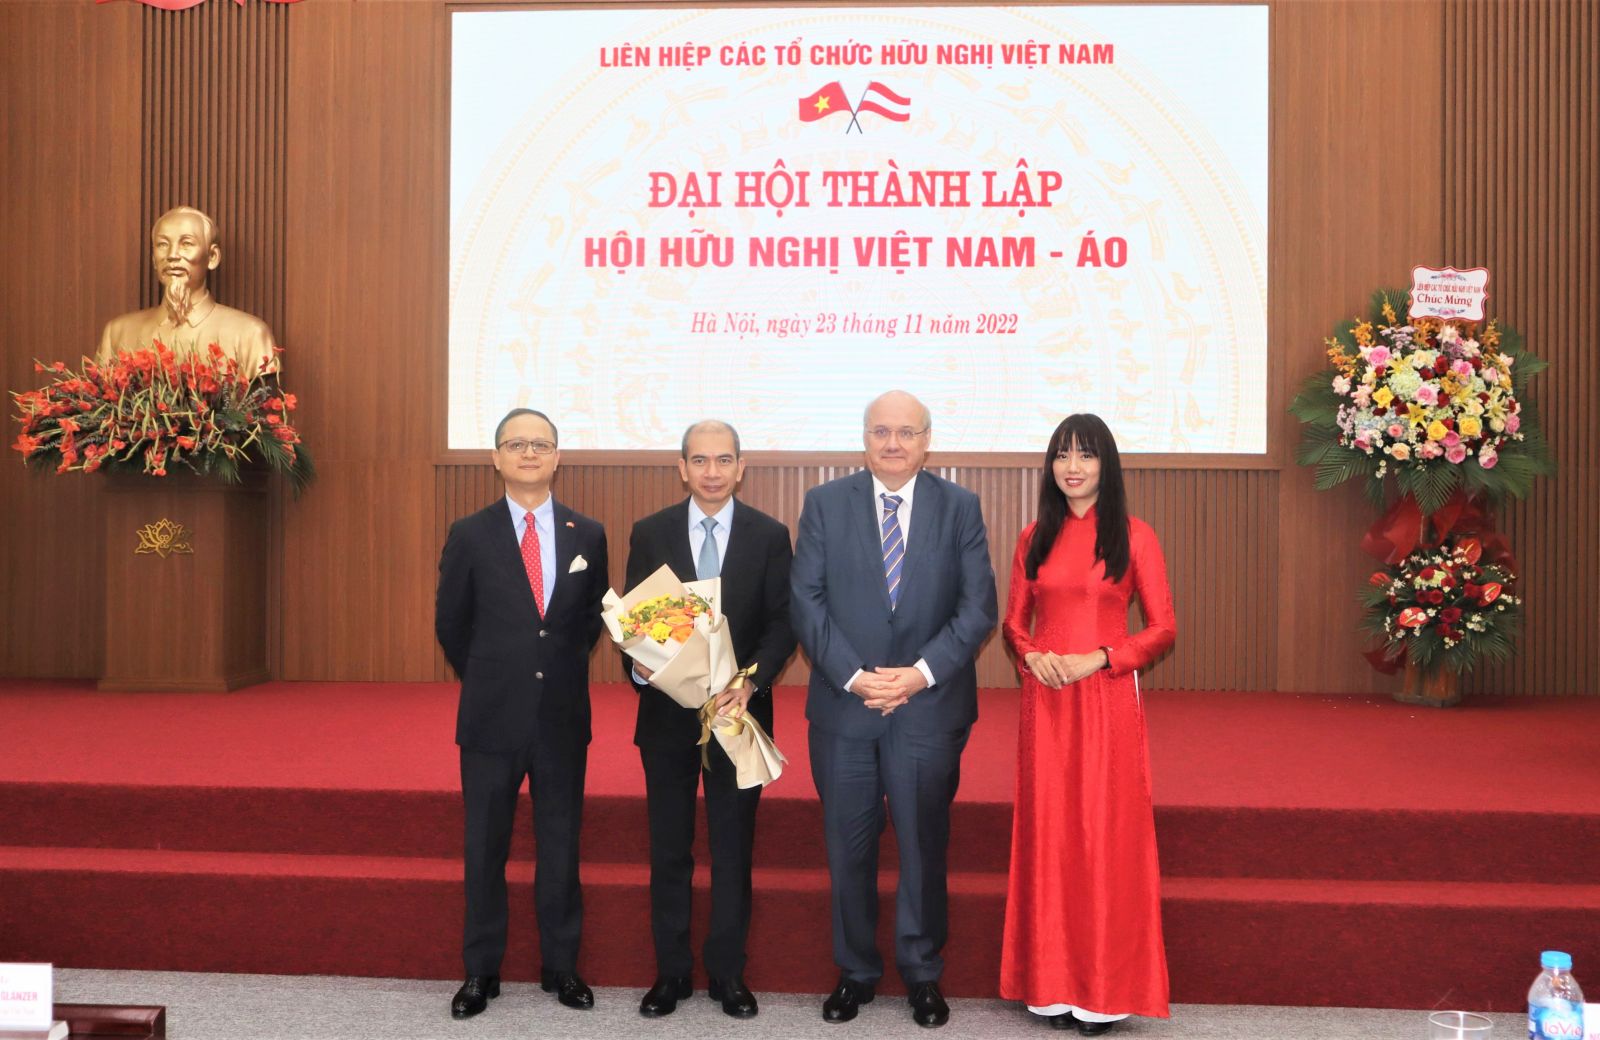 Chủ tịch NDTC. Companies được tín nhiệm giao và bầu chọn làm Phó Chủ tịch của Hội hữu nghị Việt Nam – Áo